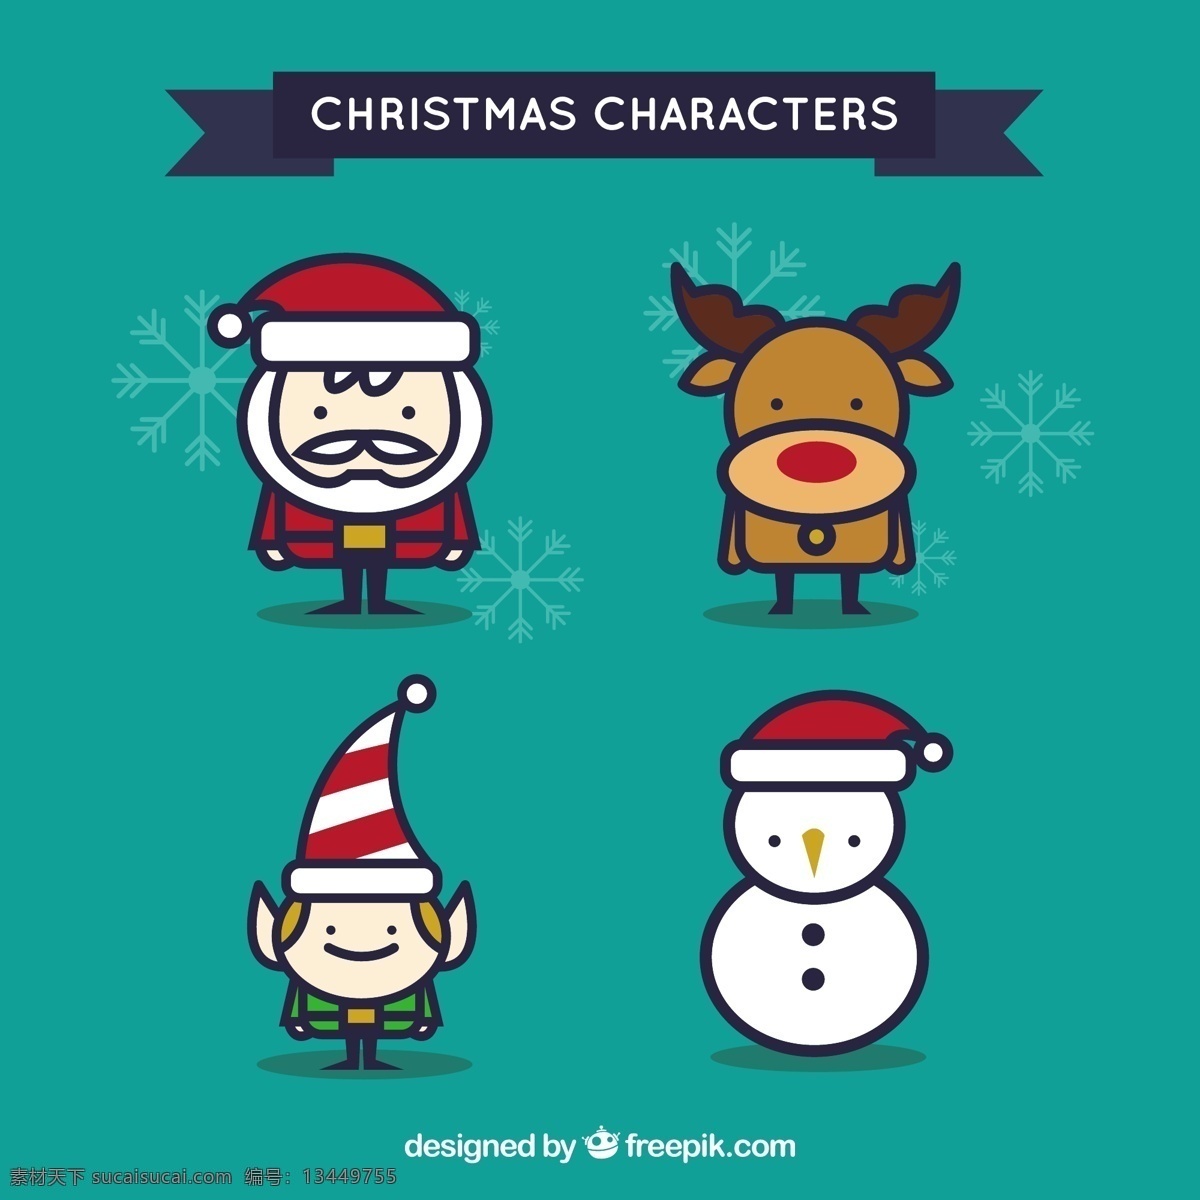 可爱 圣诞 人物 圣诞节 圣诞快乐 冬天快乐 圣诞老人 克劳斯 节日 庆典 雪人 驯鹿 节日快乐 精灵 季节 快乐 十二月 青色 天蓝色